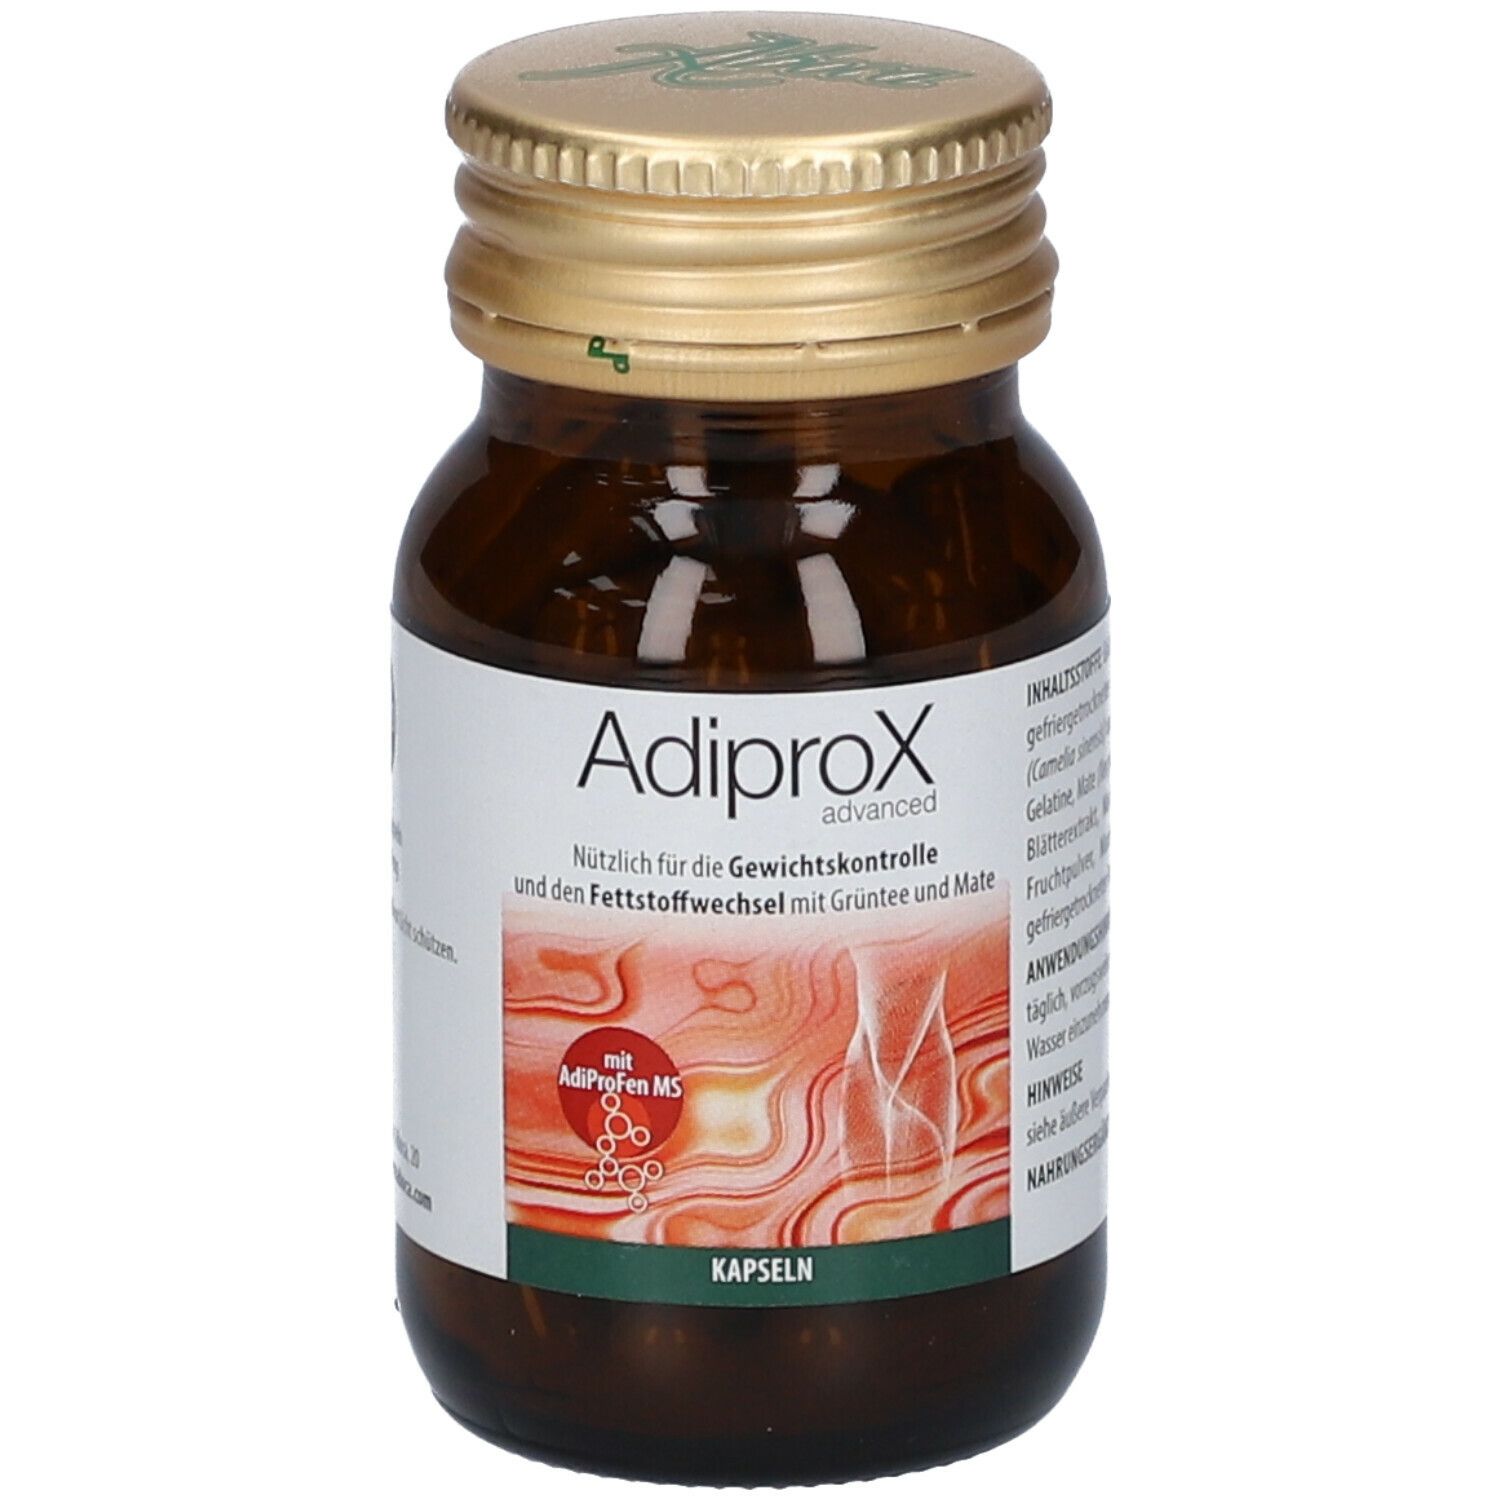 Adiprox Advanced Kapseln